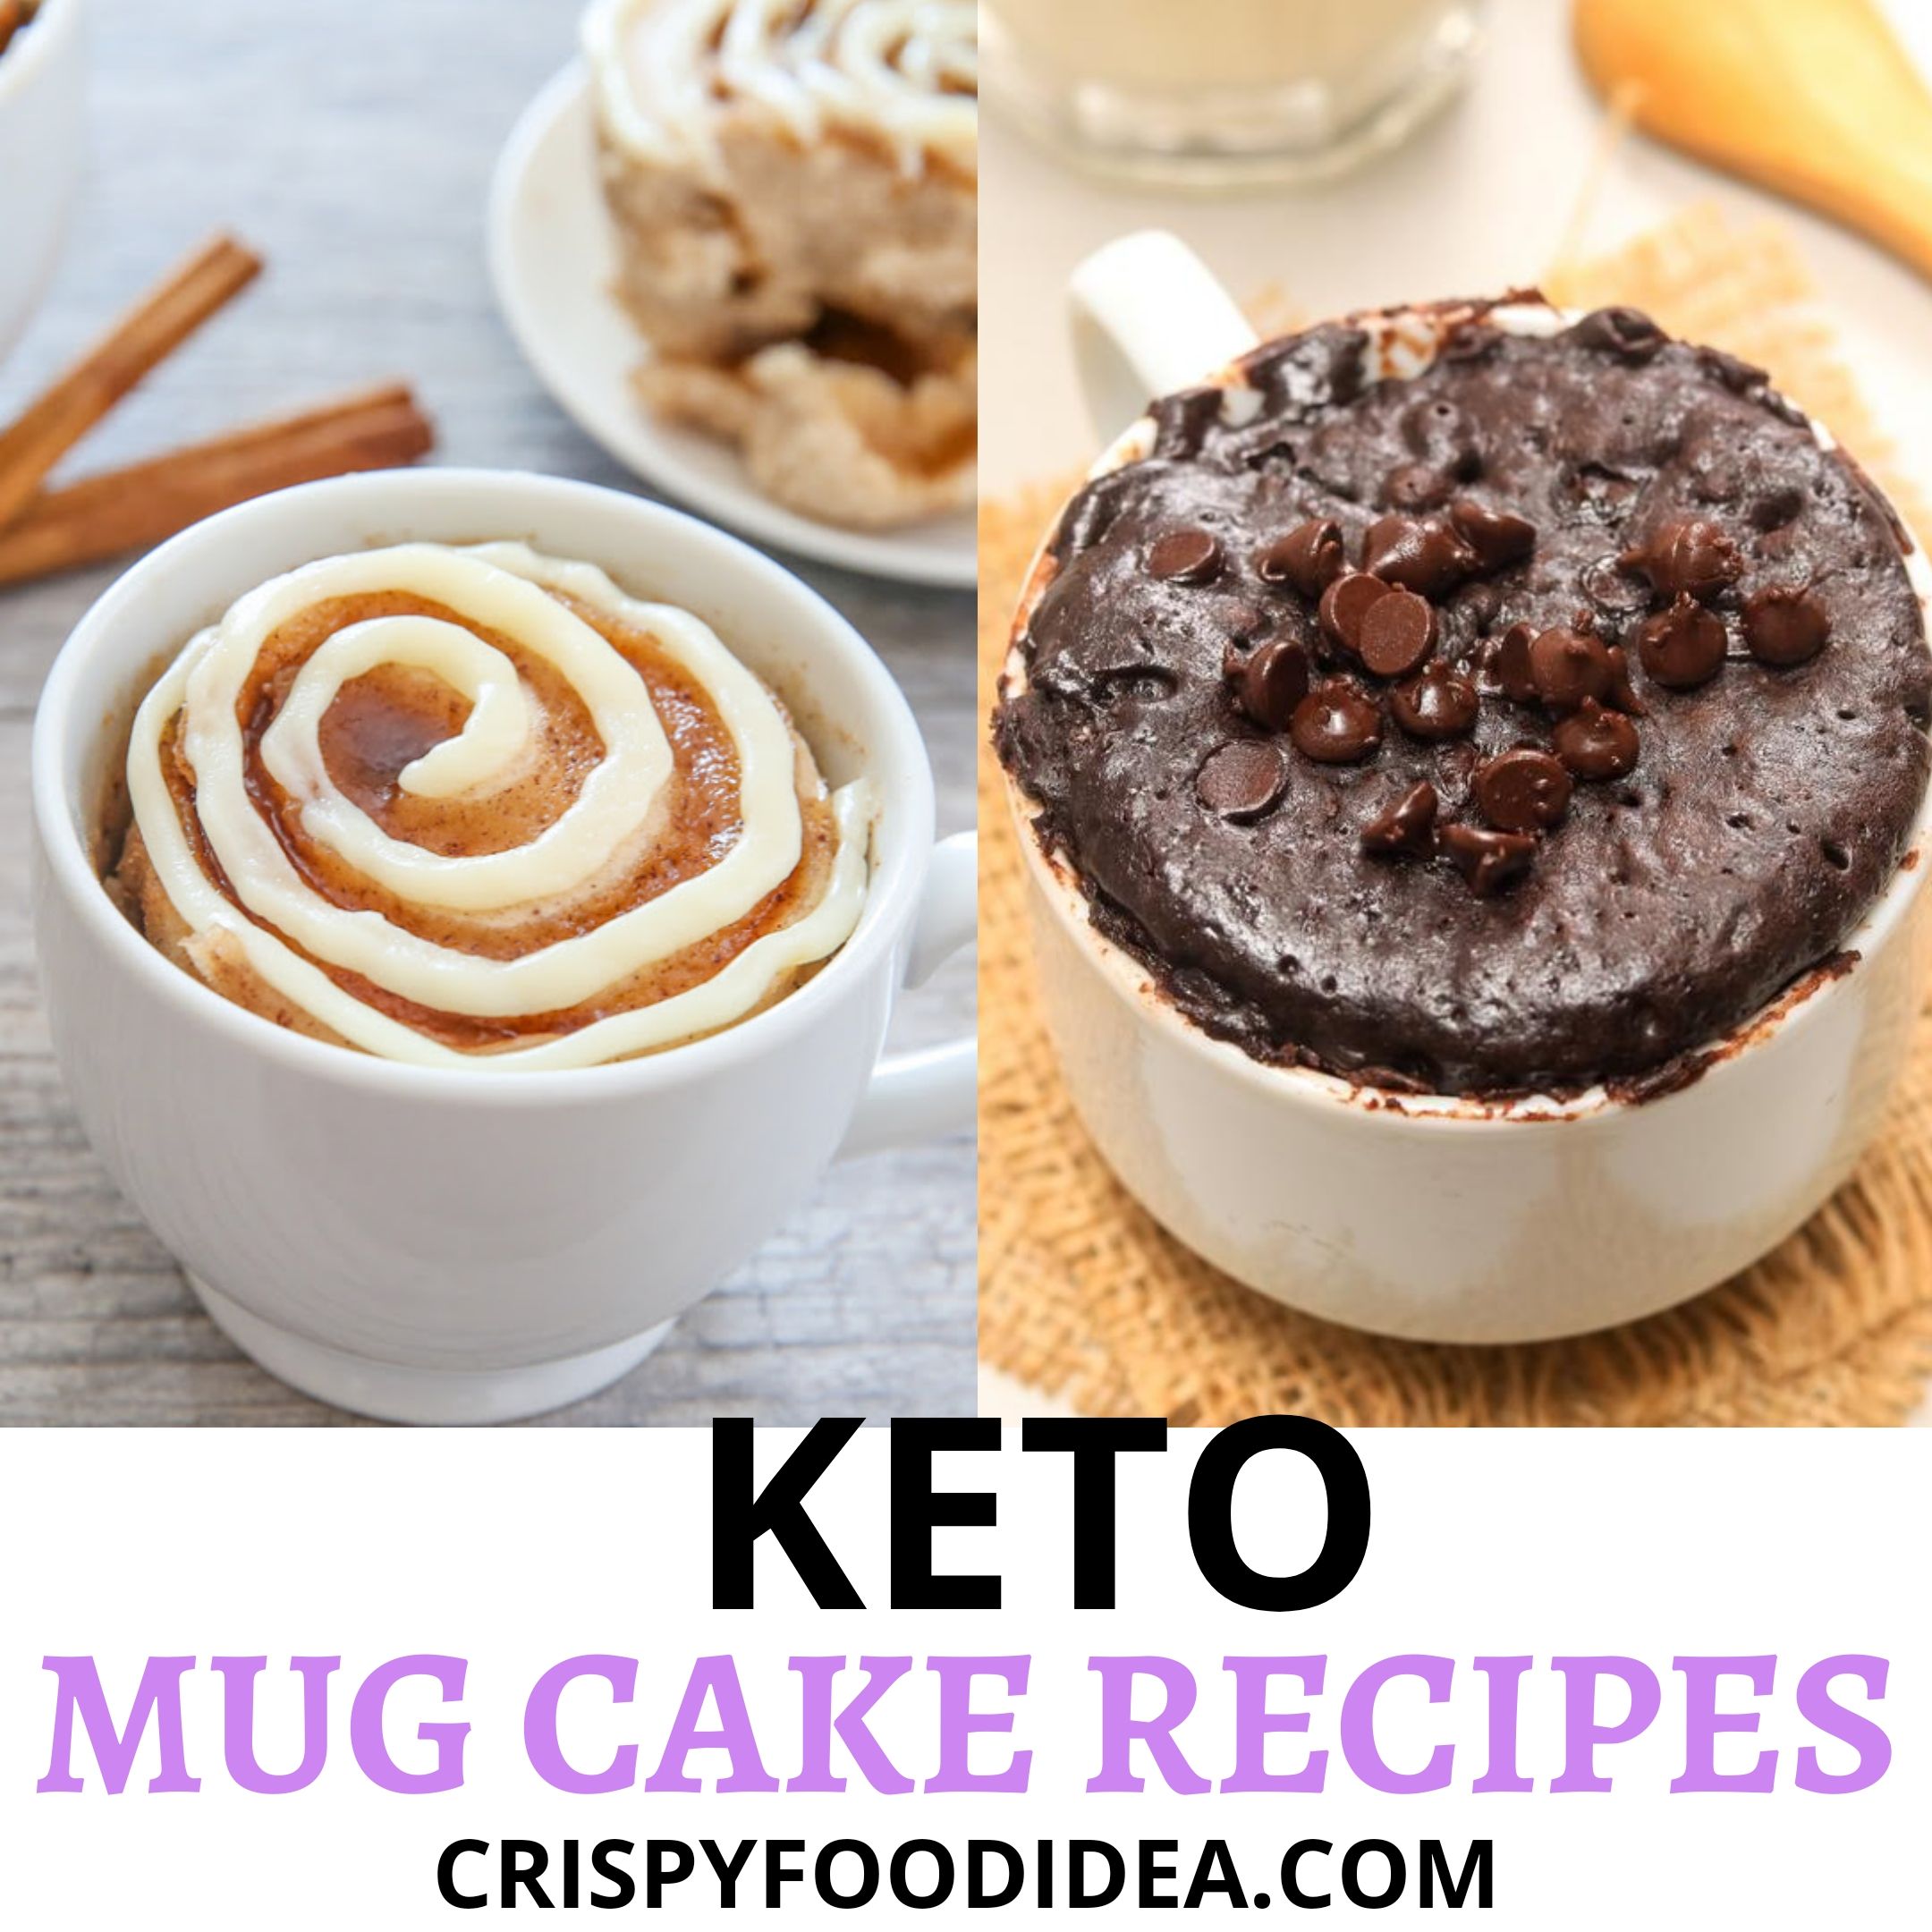 Keto Mug Cake Recipes